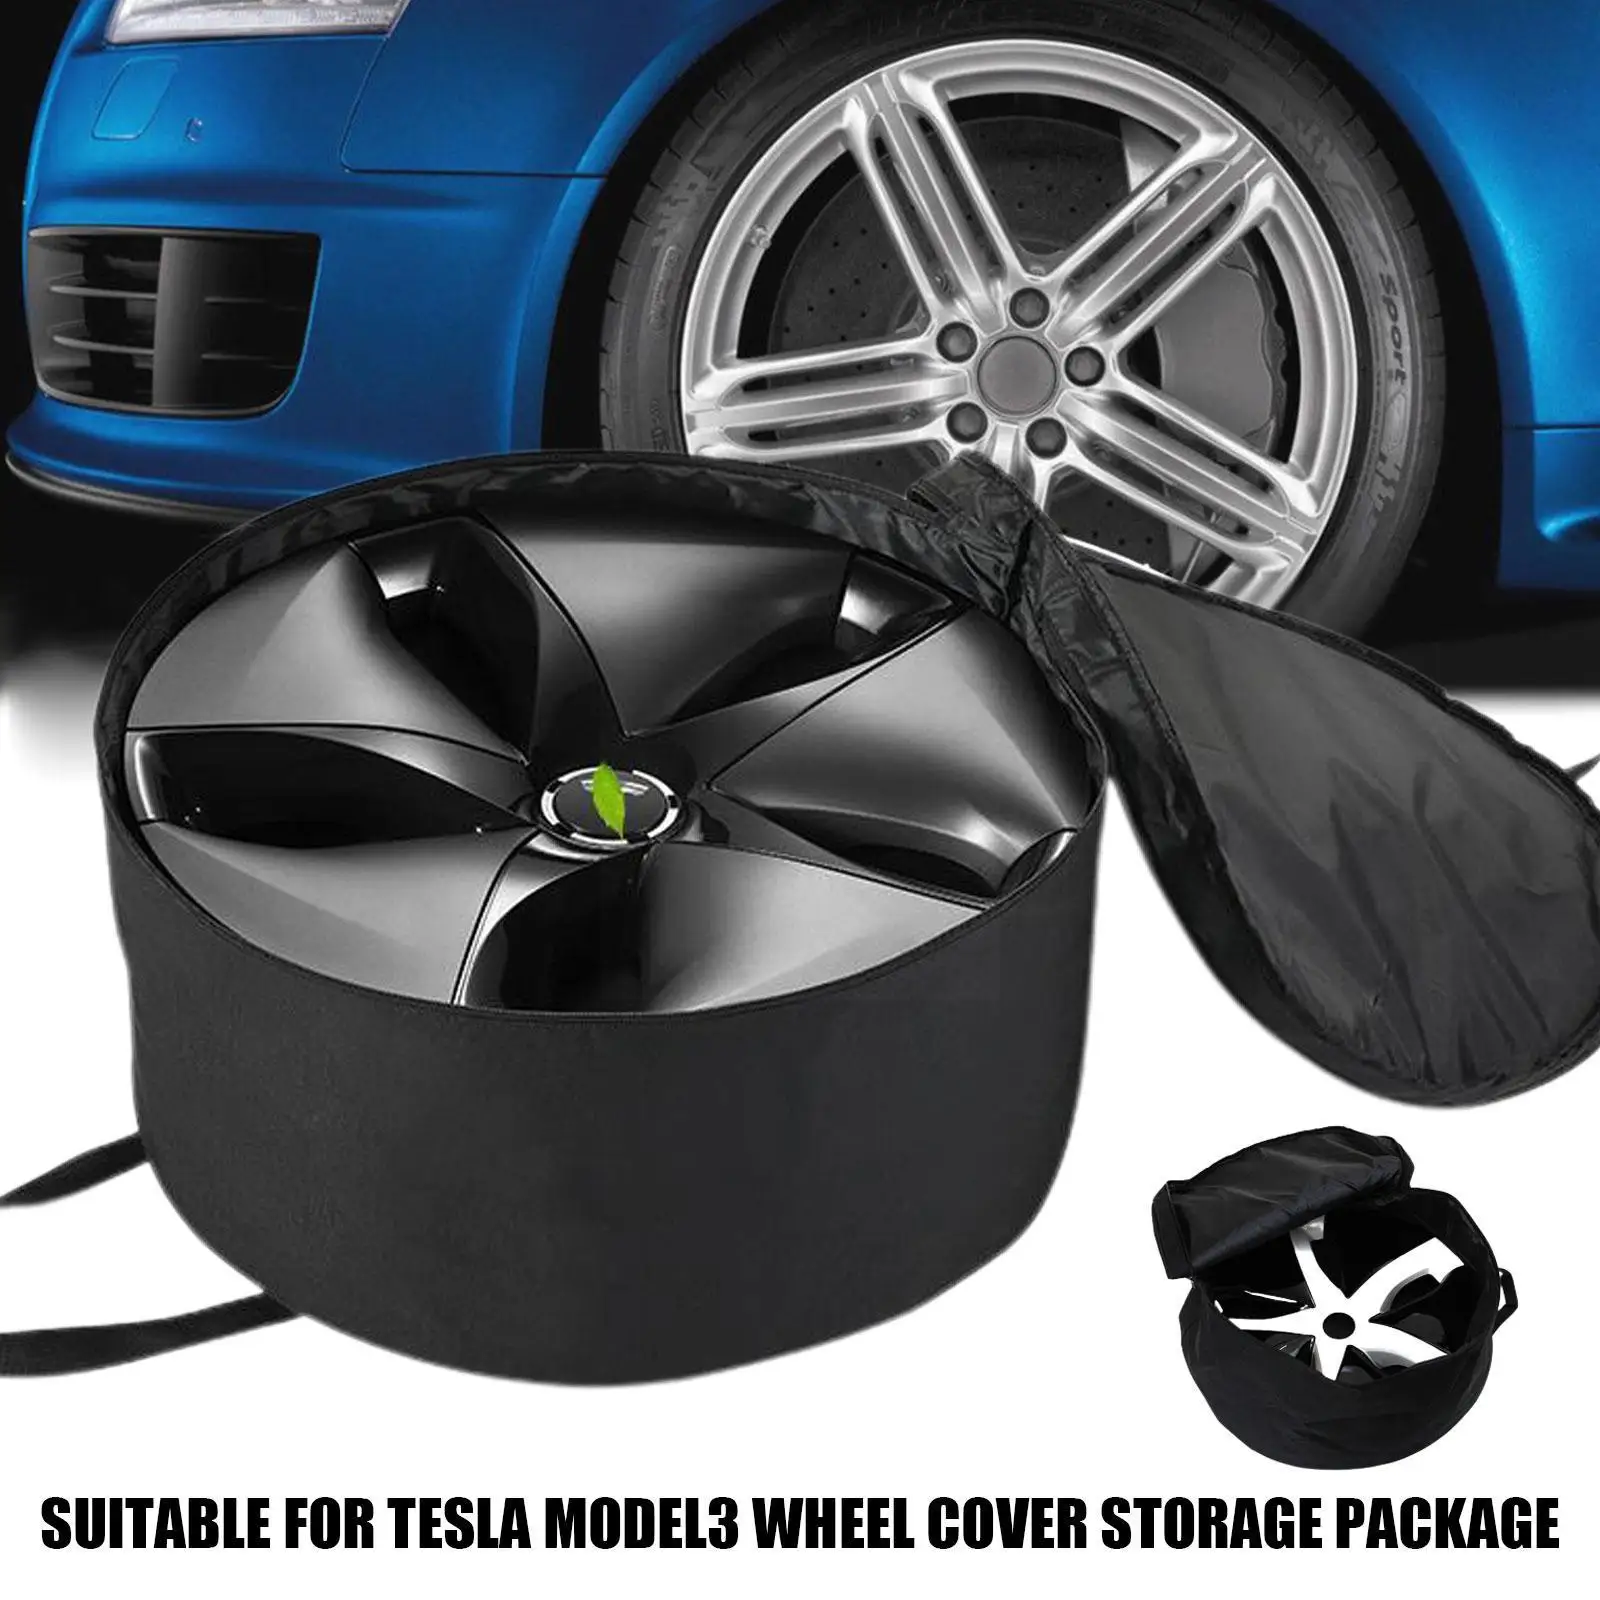 Сумка для хранения рулевой рубки автомобиля Применима Для Tesla Model3, сумка для хранения Крышки ступицы, сумка для хранения модельной ступицы, аксессуары для модернизации S5I1 1